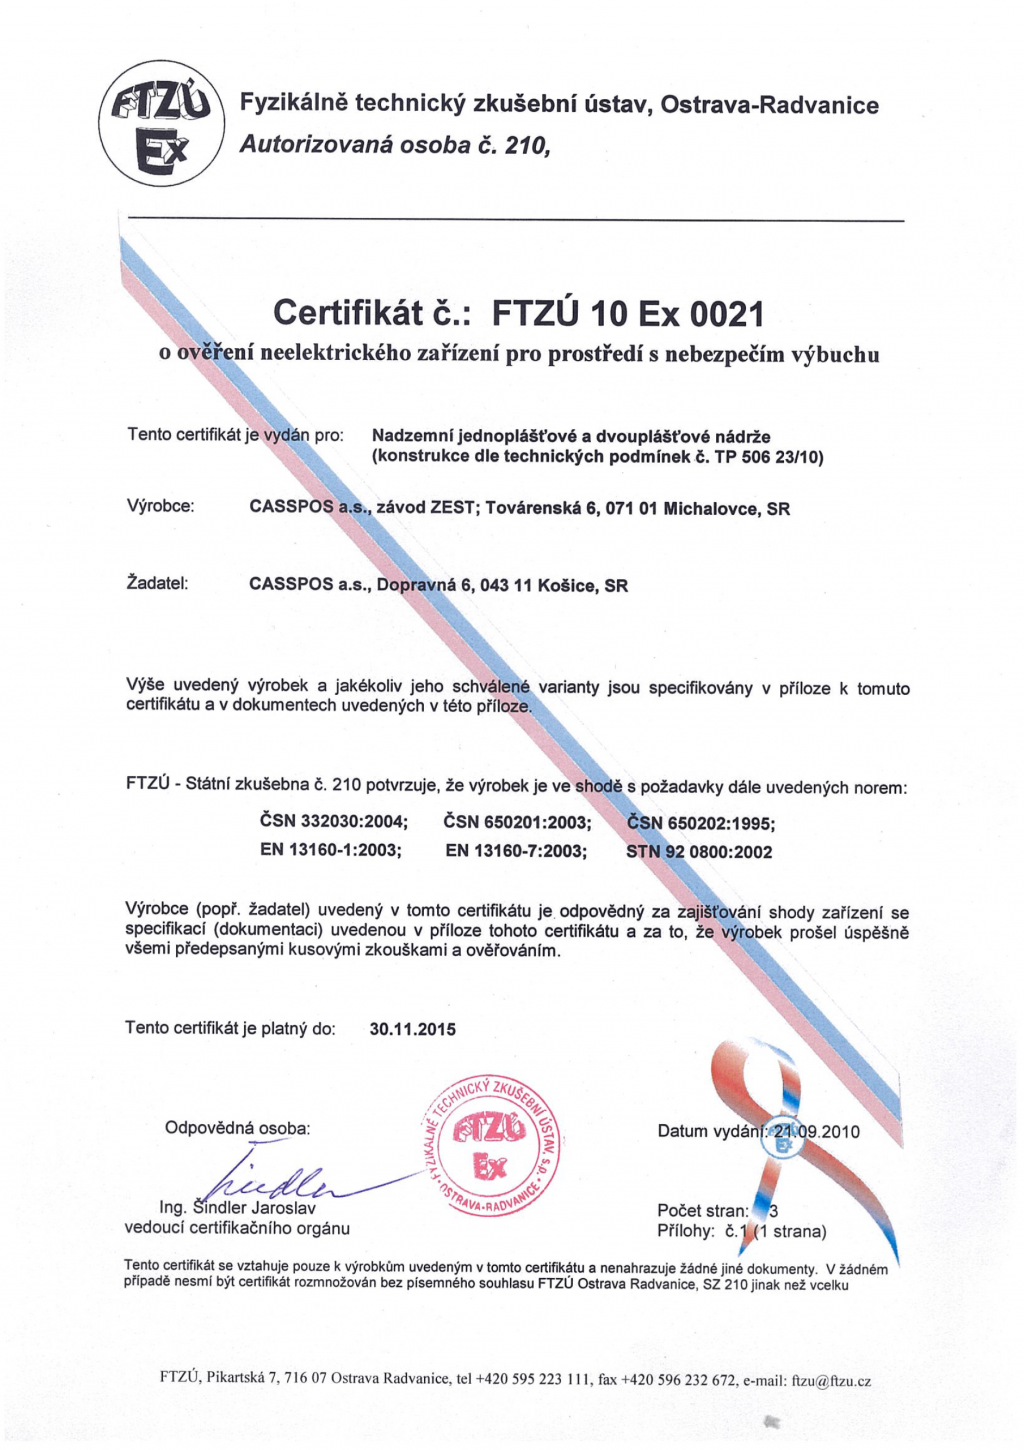 Certifkát FTZÚ 10 Ex 0021 a prílohy (2025)